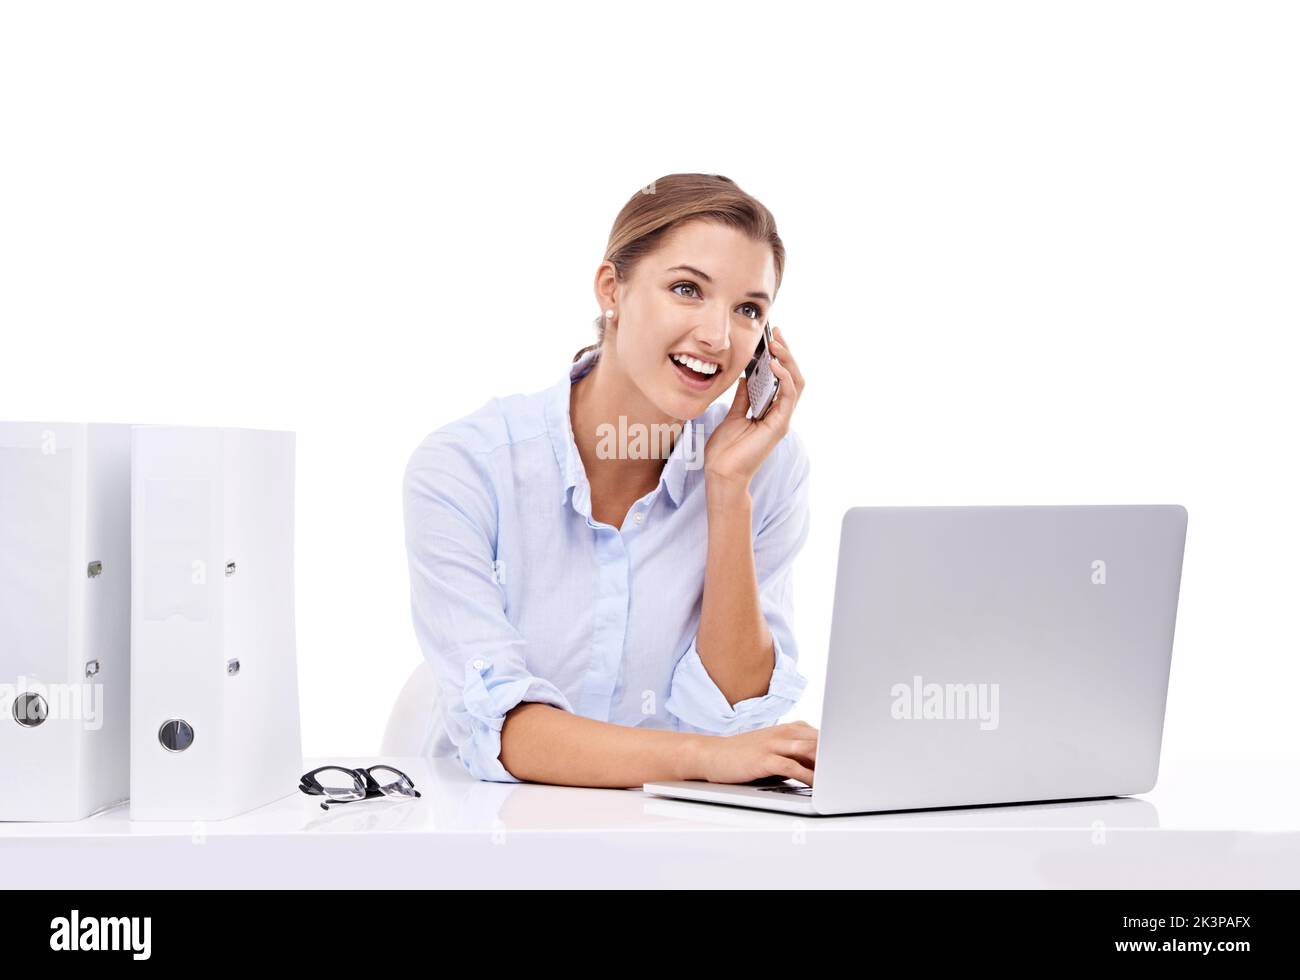 Contattare colleghi e clienti. Una giovane e attraente donna d'affari che parla sul suo cellulare e naviga in rete. Foto Stock